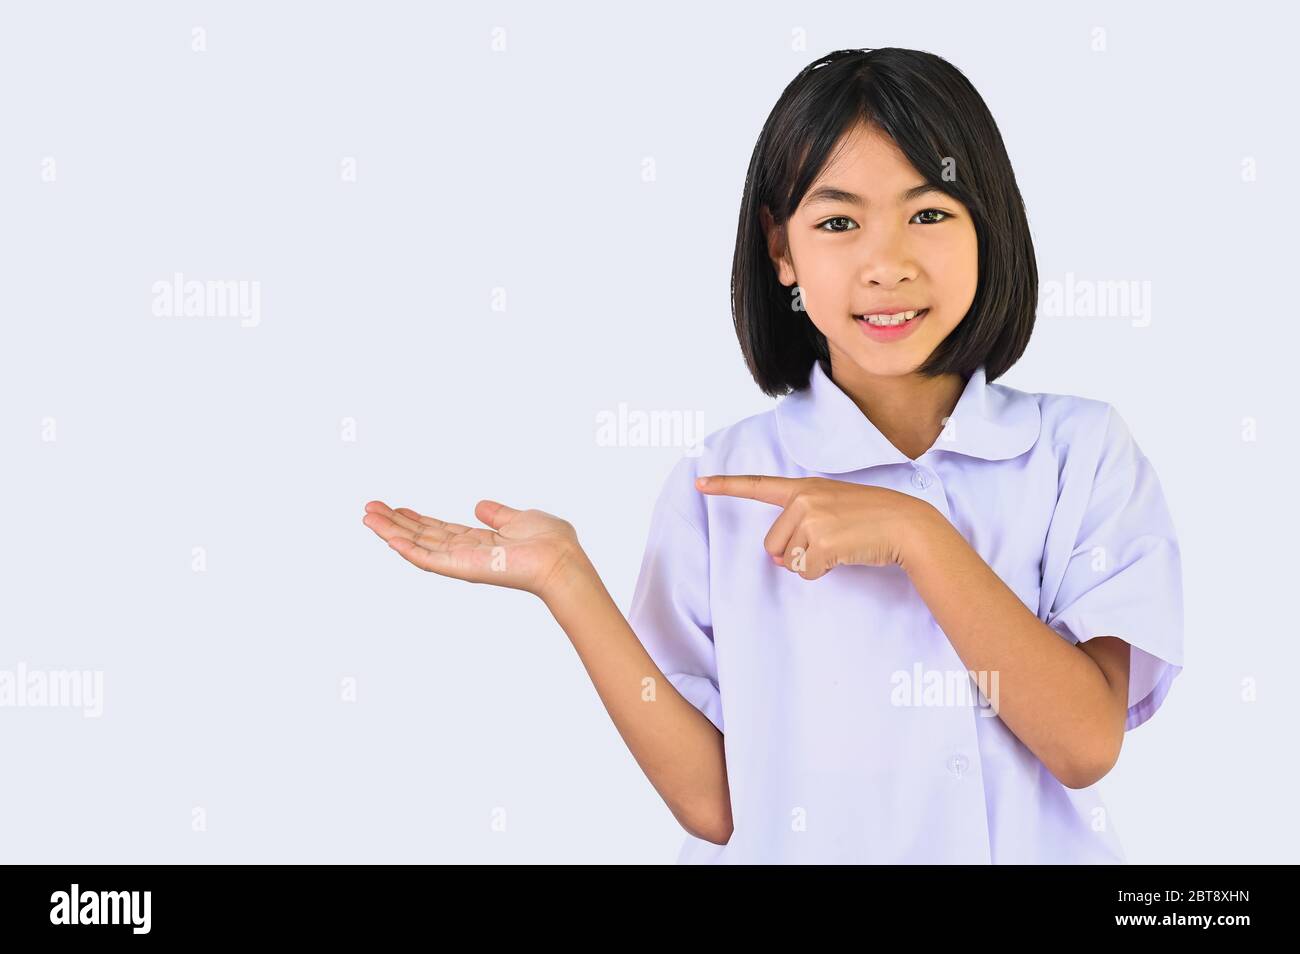 Asiatische kleine Schulmädchen zeigt etwas über ihre Hand und Finger zeigen, Kind suchen Lächeln auf Kamera in weißem Hintergrund für die Show oder isoliert Stockfoto